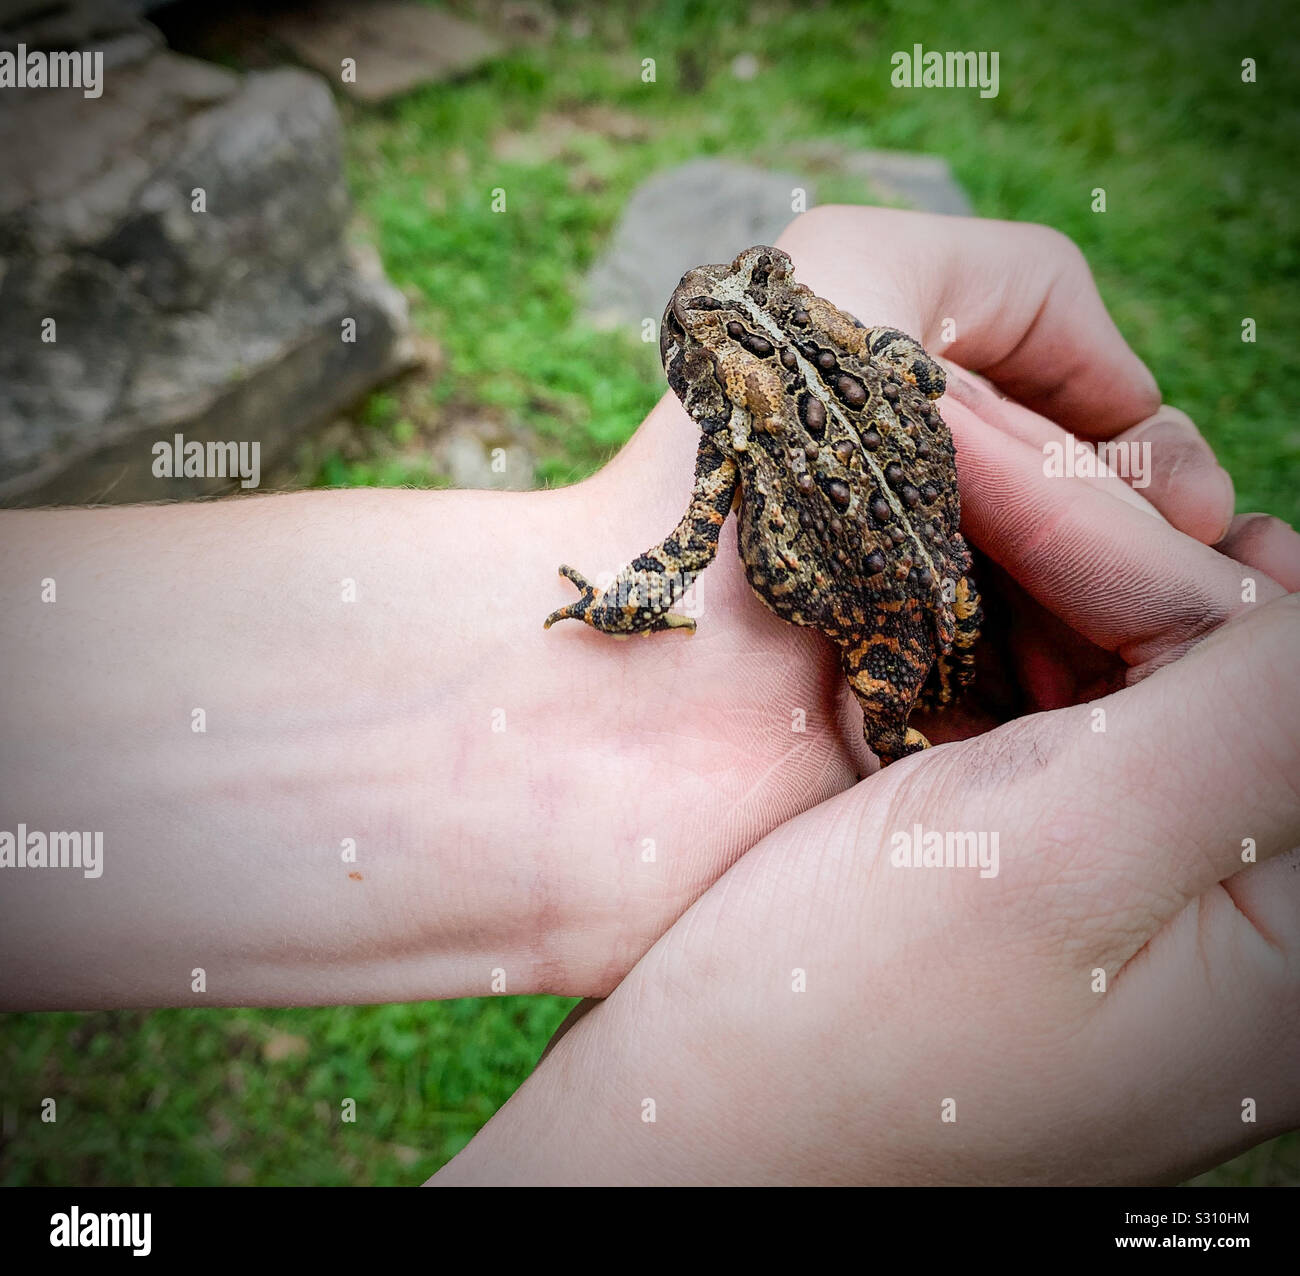 A toad escaping a boy’s grasp. Stock Photo